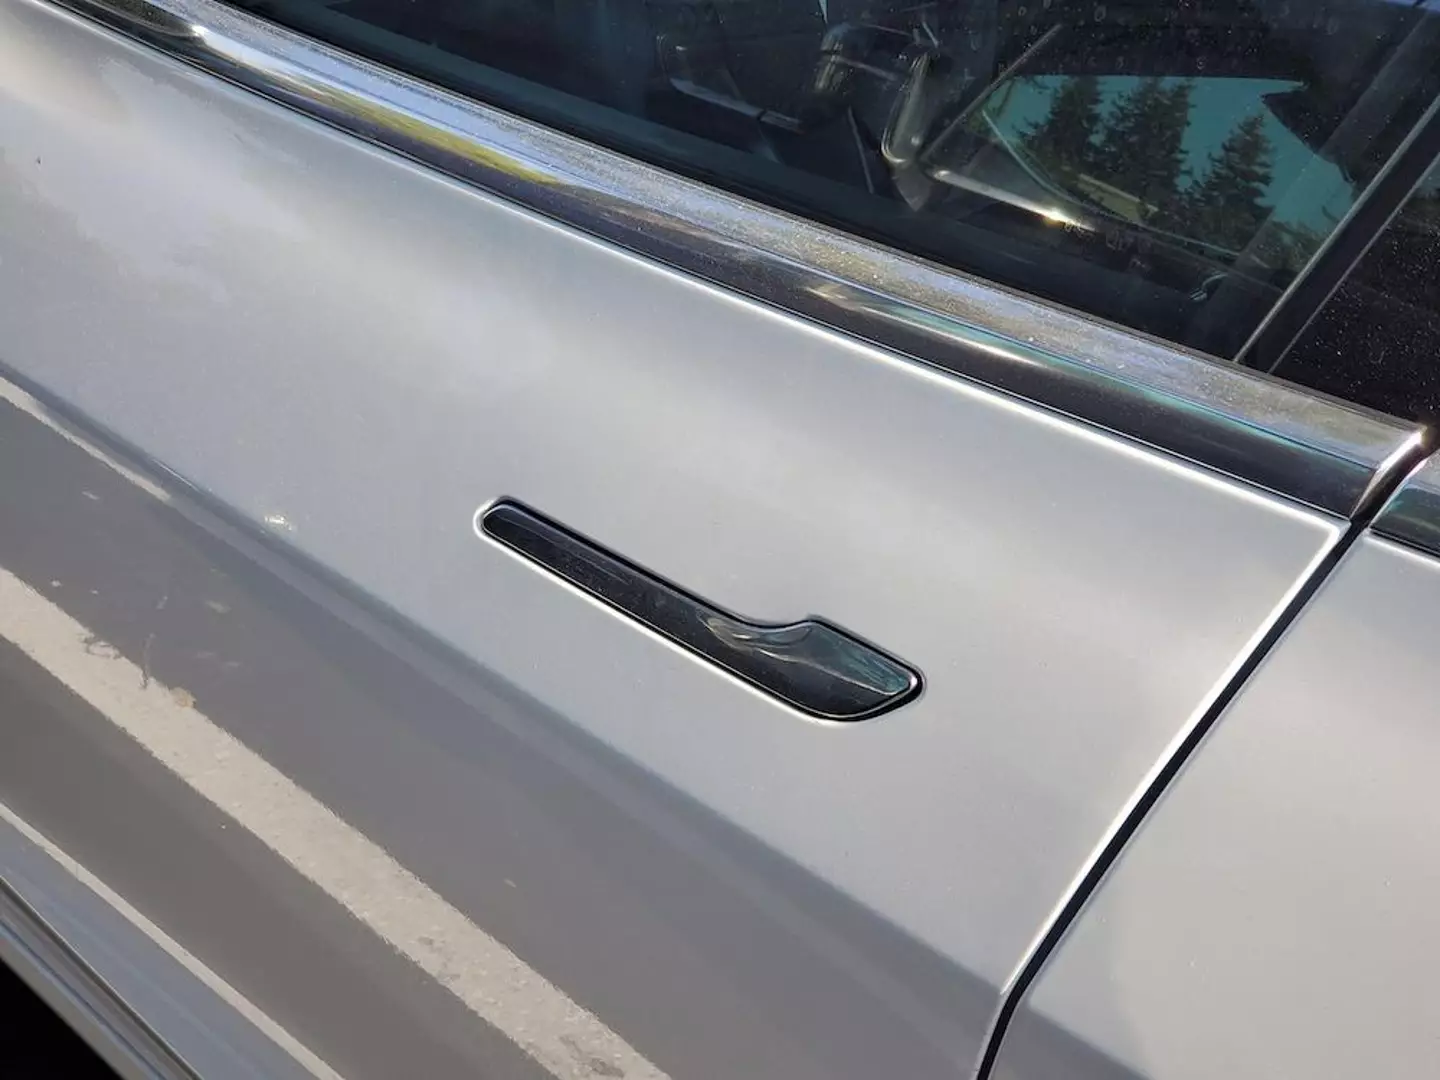 Tesla's door handles are different to traditional ones.